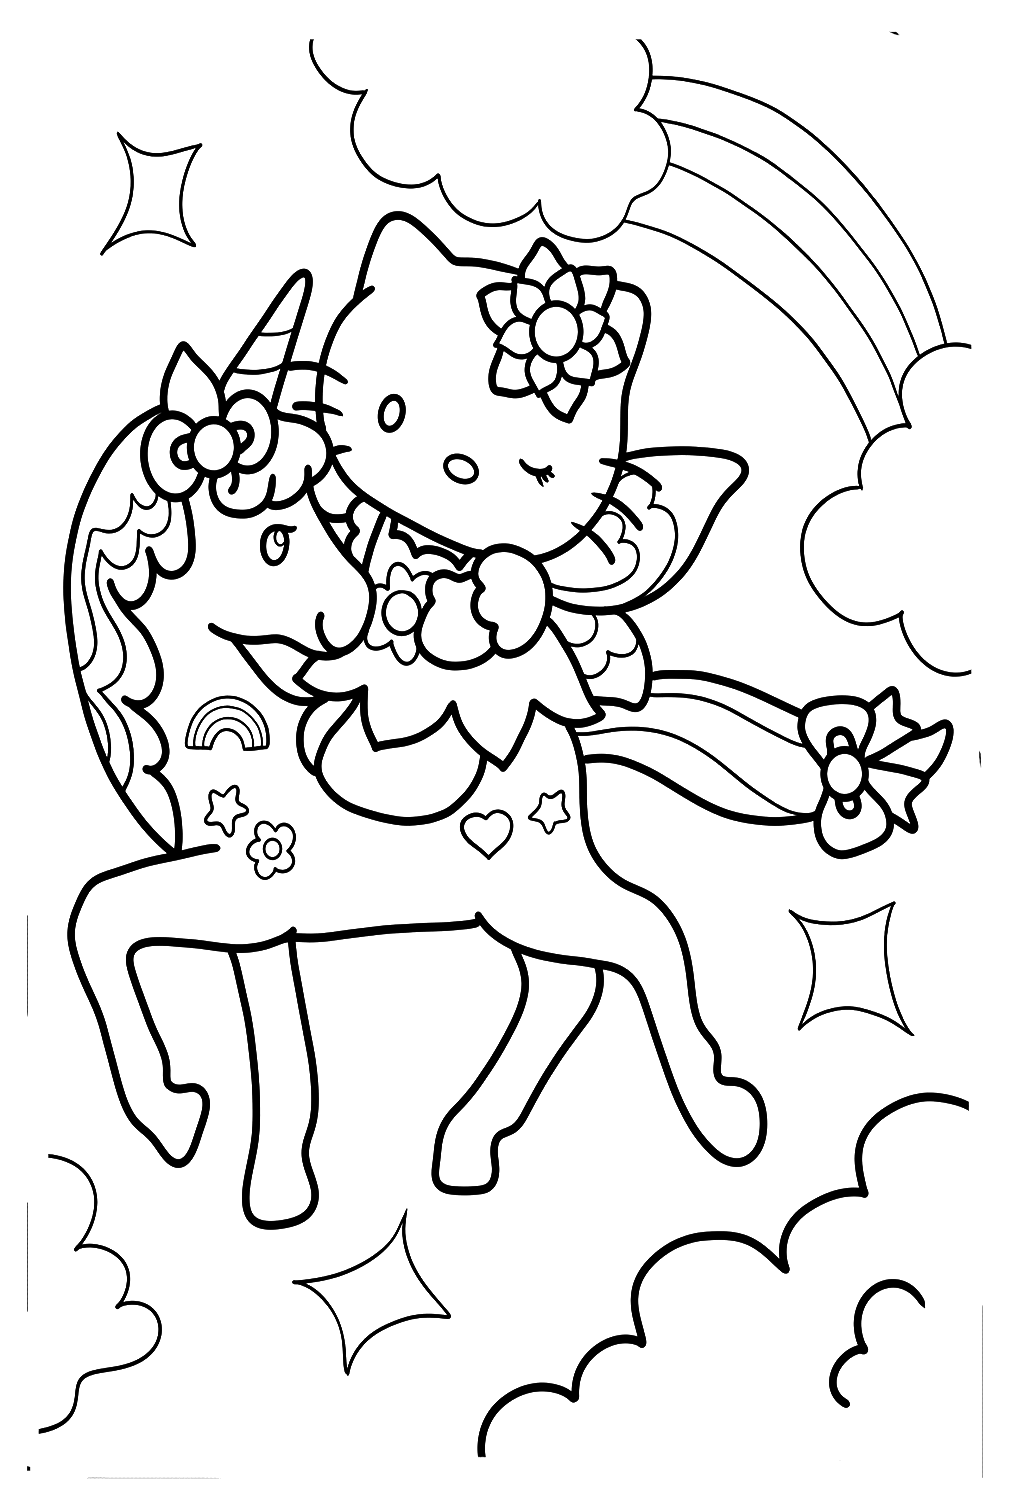 Página para colorir da Hello Kitty com unicórnio da Unicorn